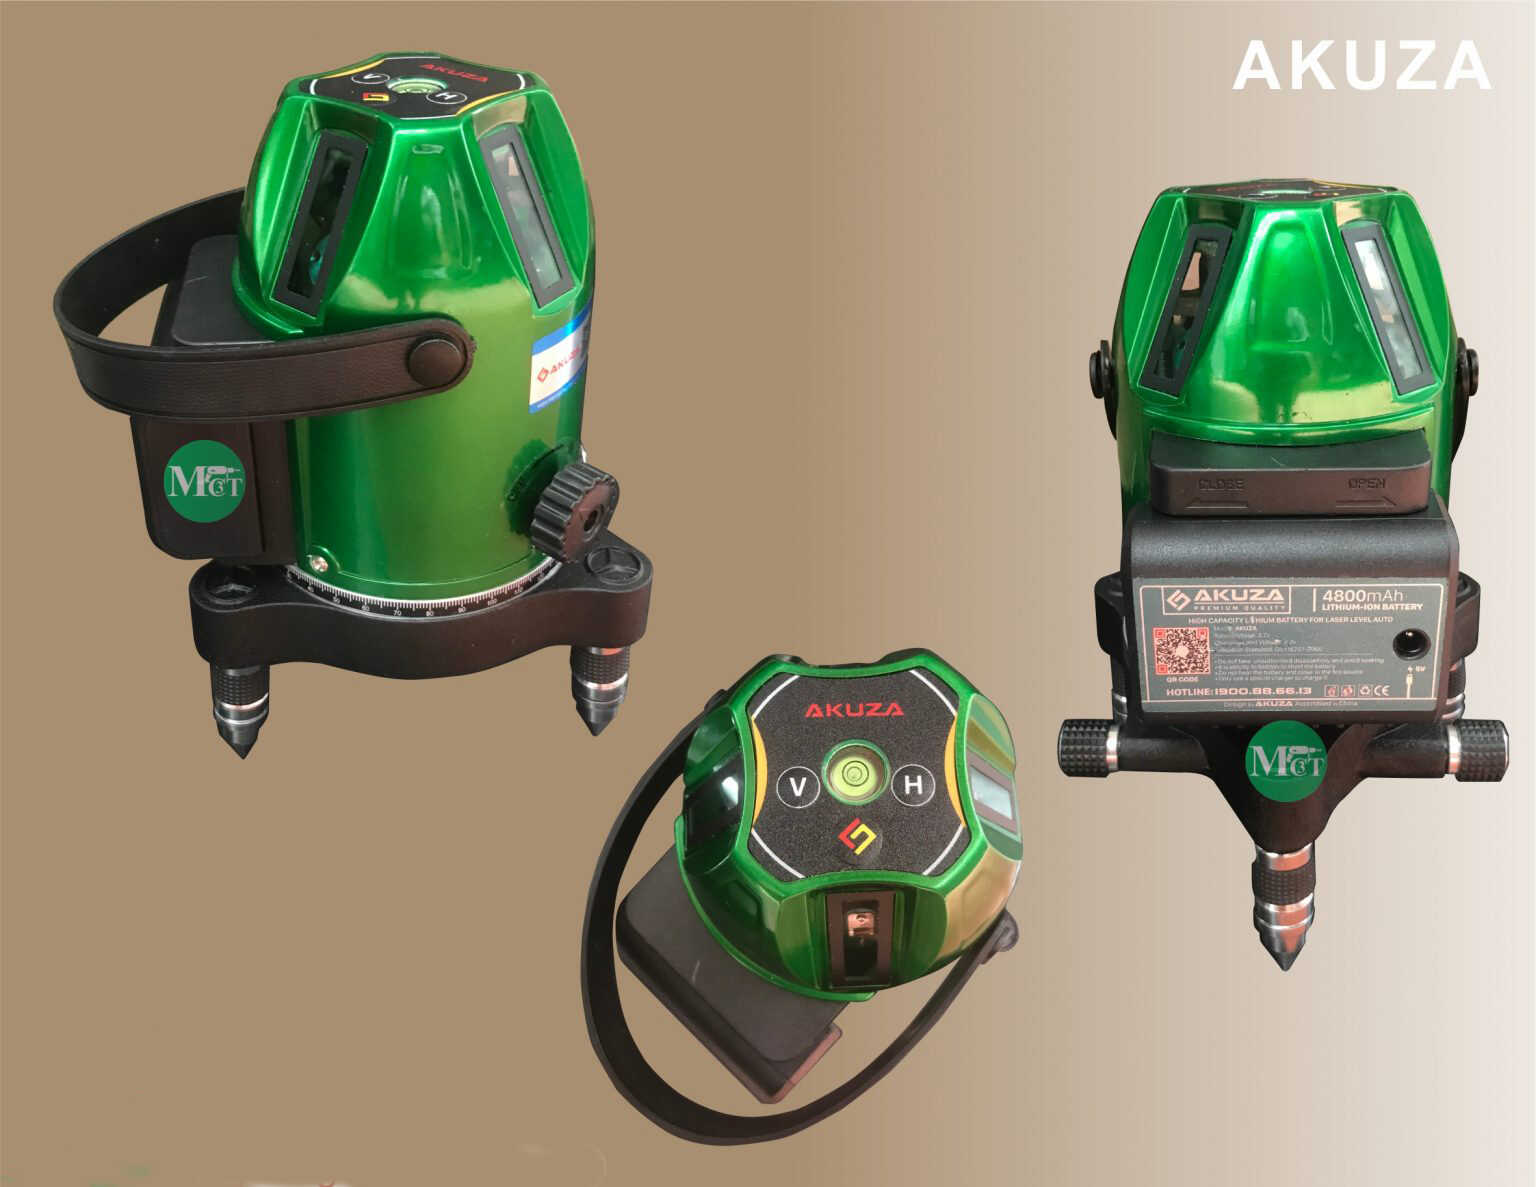 Bộ cung cấp đầy đủ phụ kiện đi kèm máy laser Akuza AK 686 D